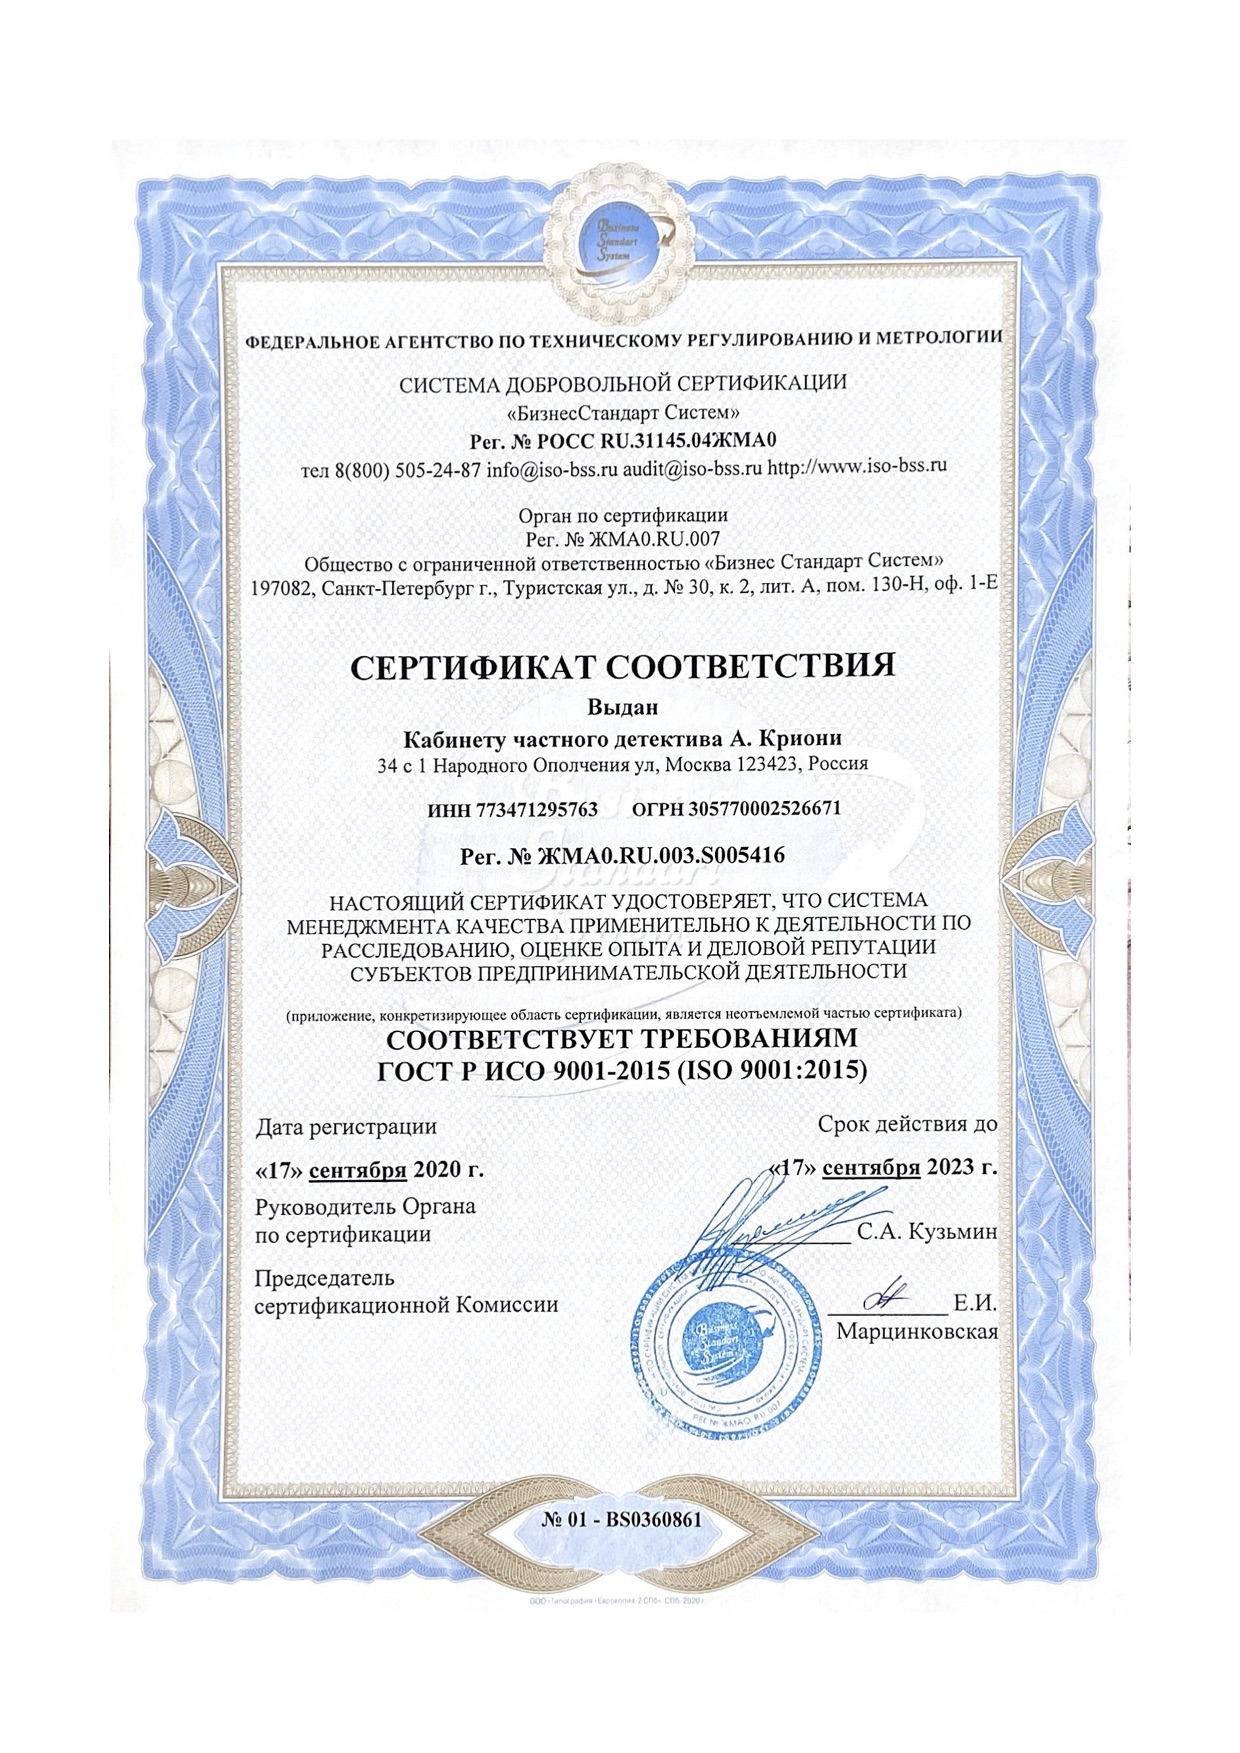 Стандарт ISO 9001:2015 выдан Кабинету детектива Александра «KRIONI» 